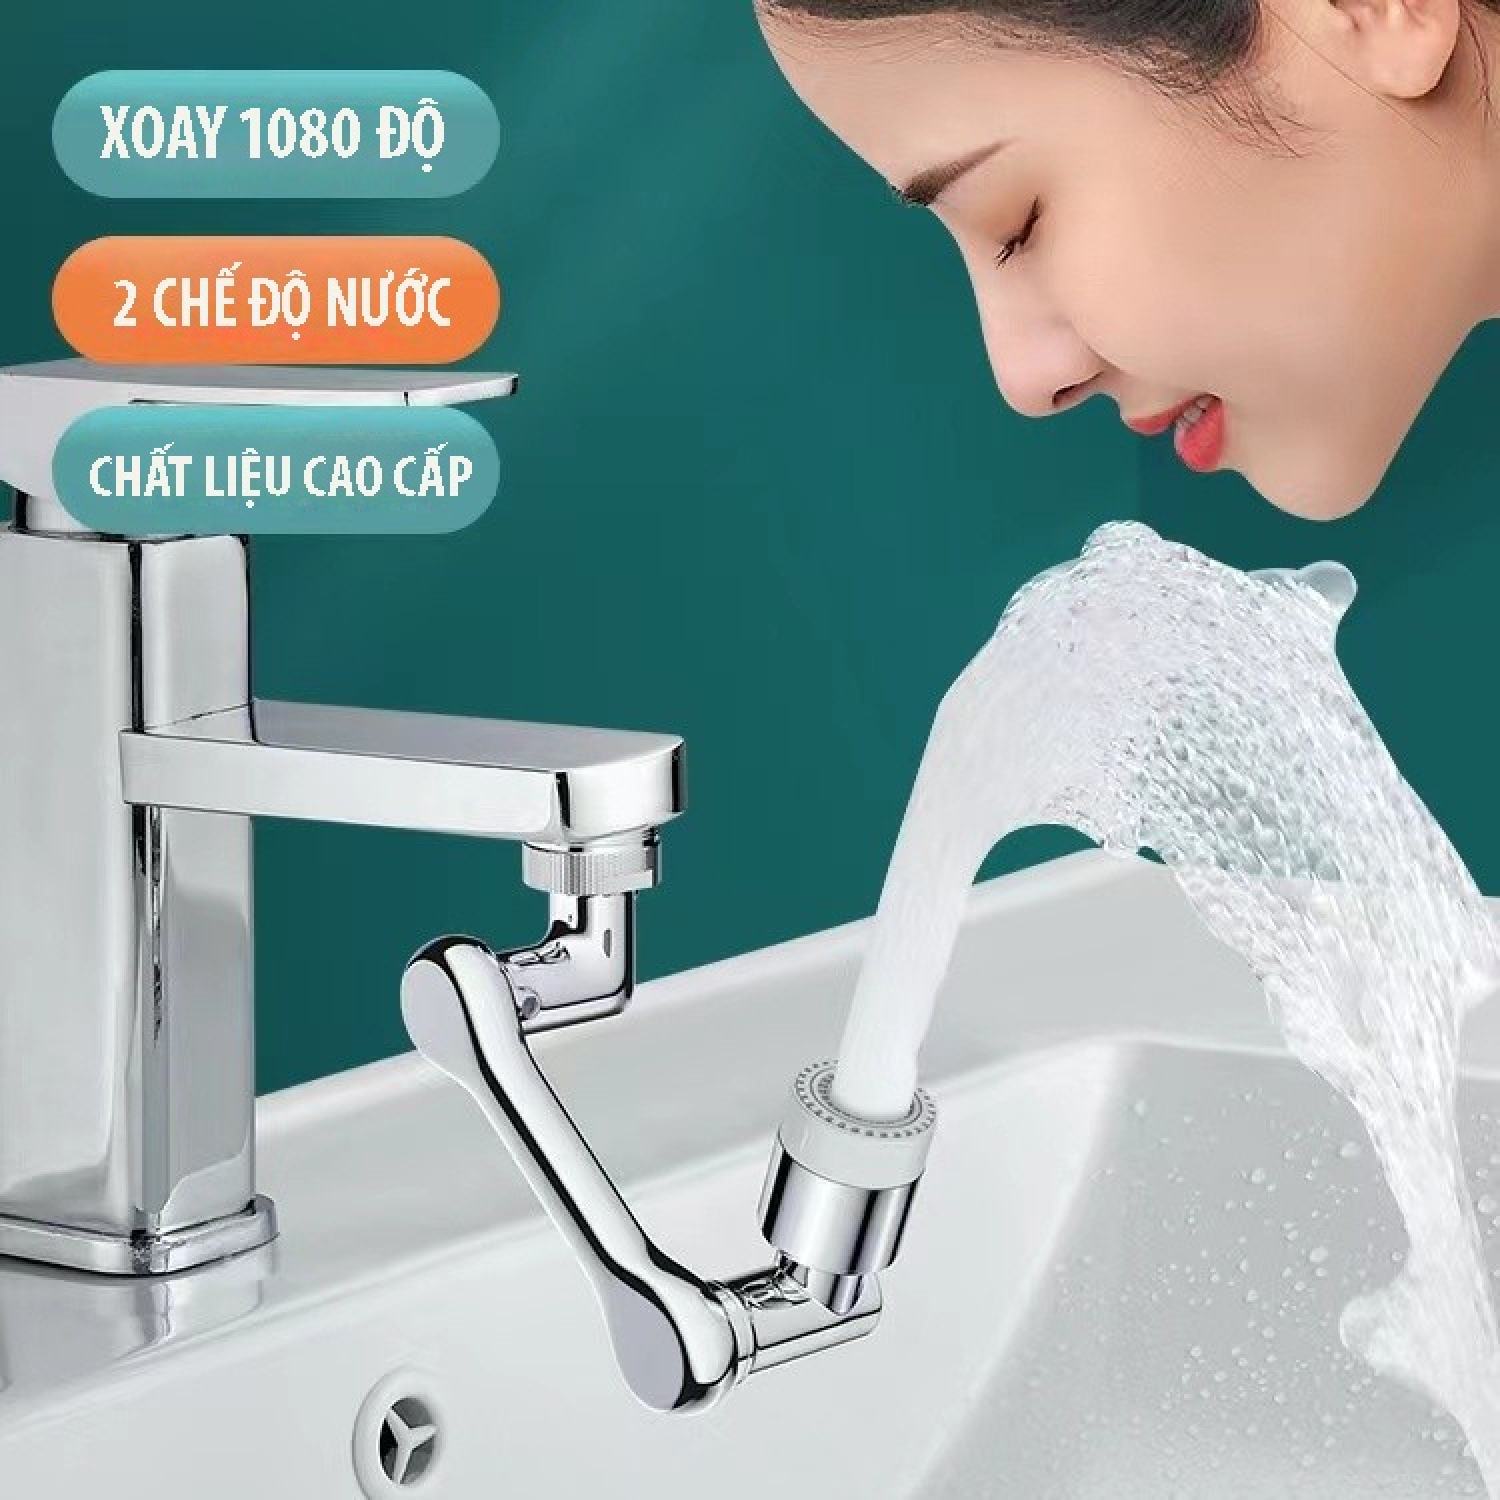 (inox)Đầu nối vòi nước thông minh xoay 1080 độ -Vòi nước lắp chậu rửa bát chén inox cao cấp với 2 chế độ nước